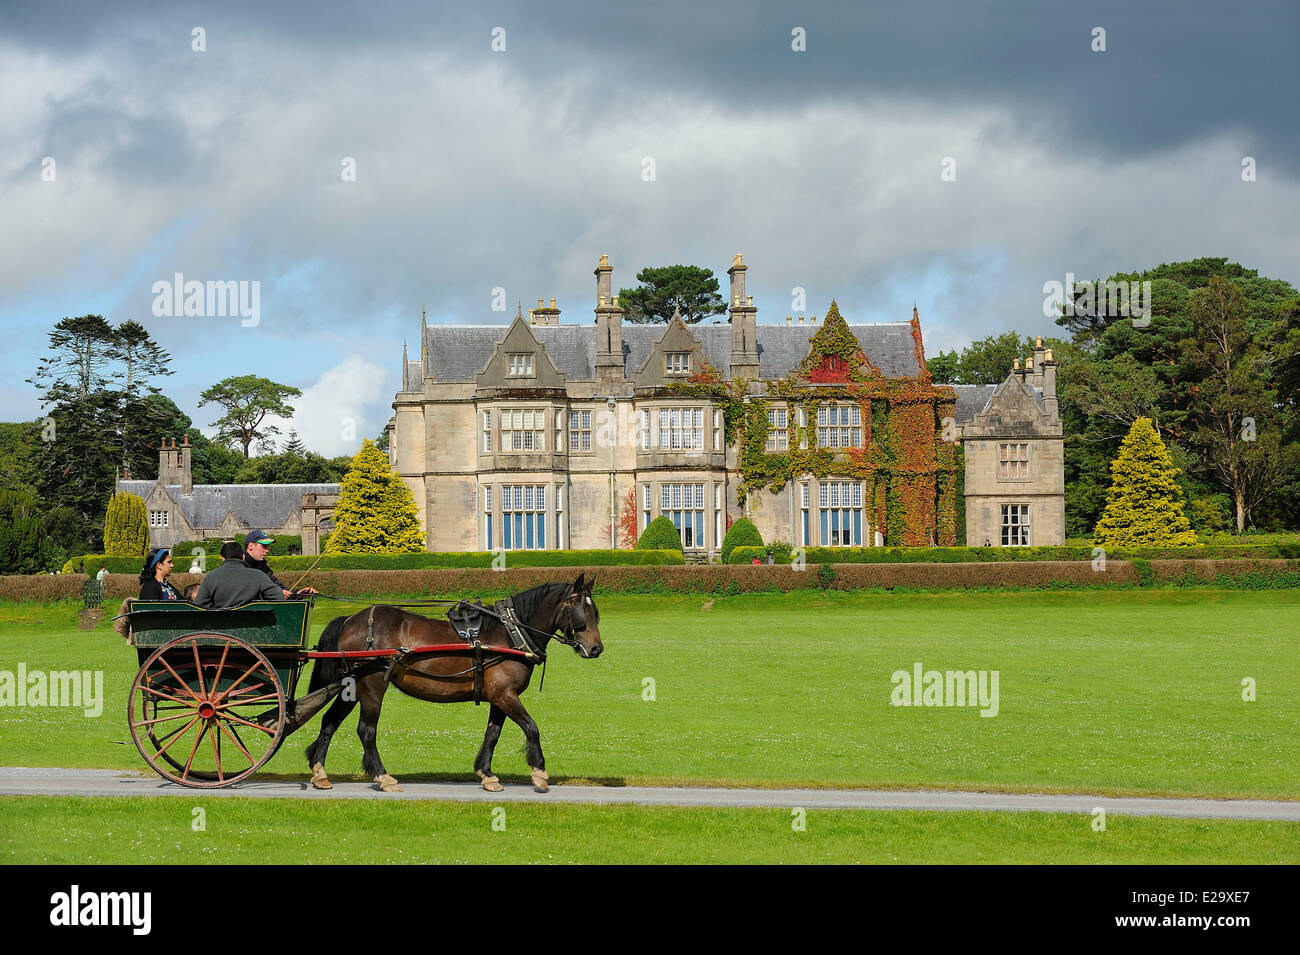 Ireland, County Kerry, Killarney, Muckross House and Gardens Stock Photo